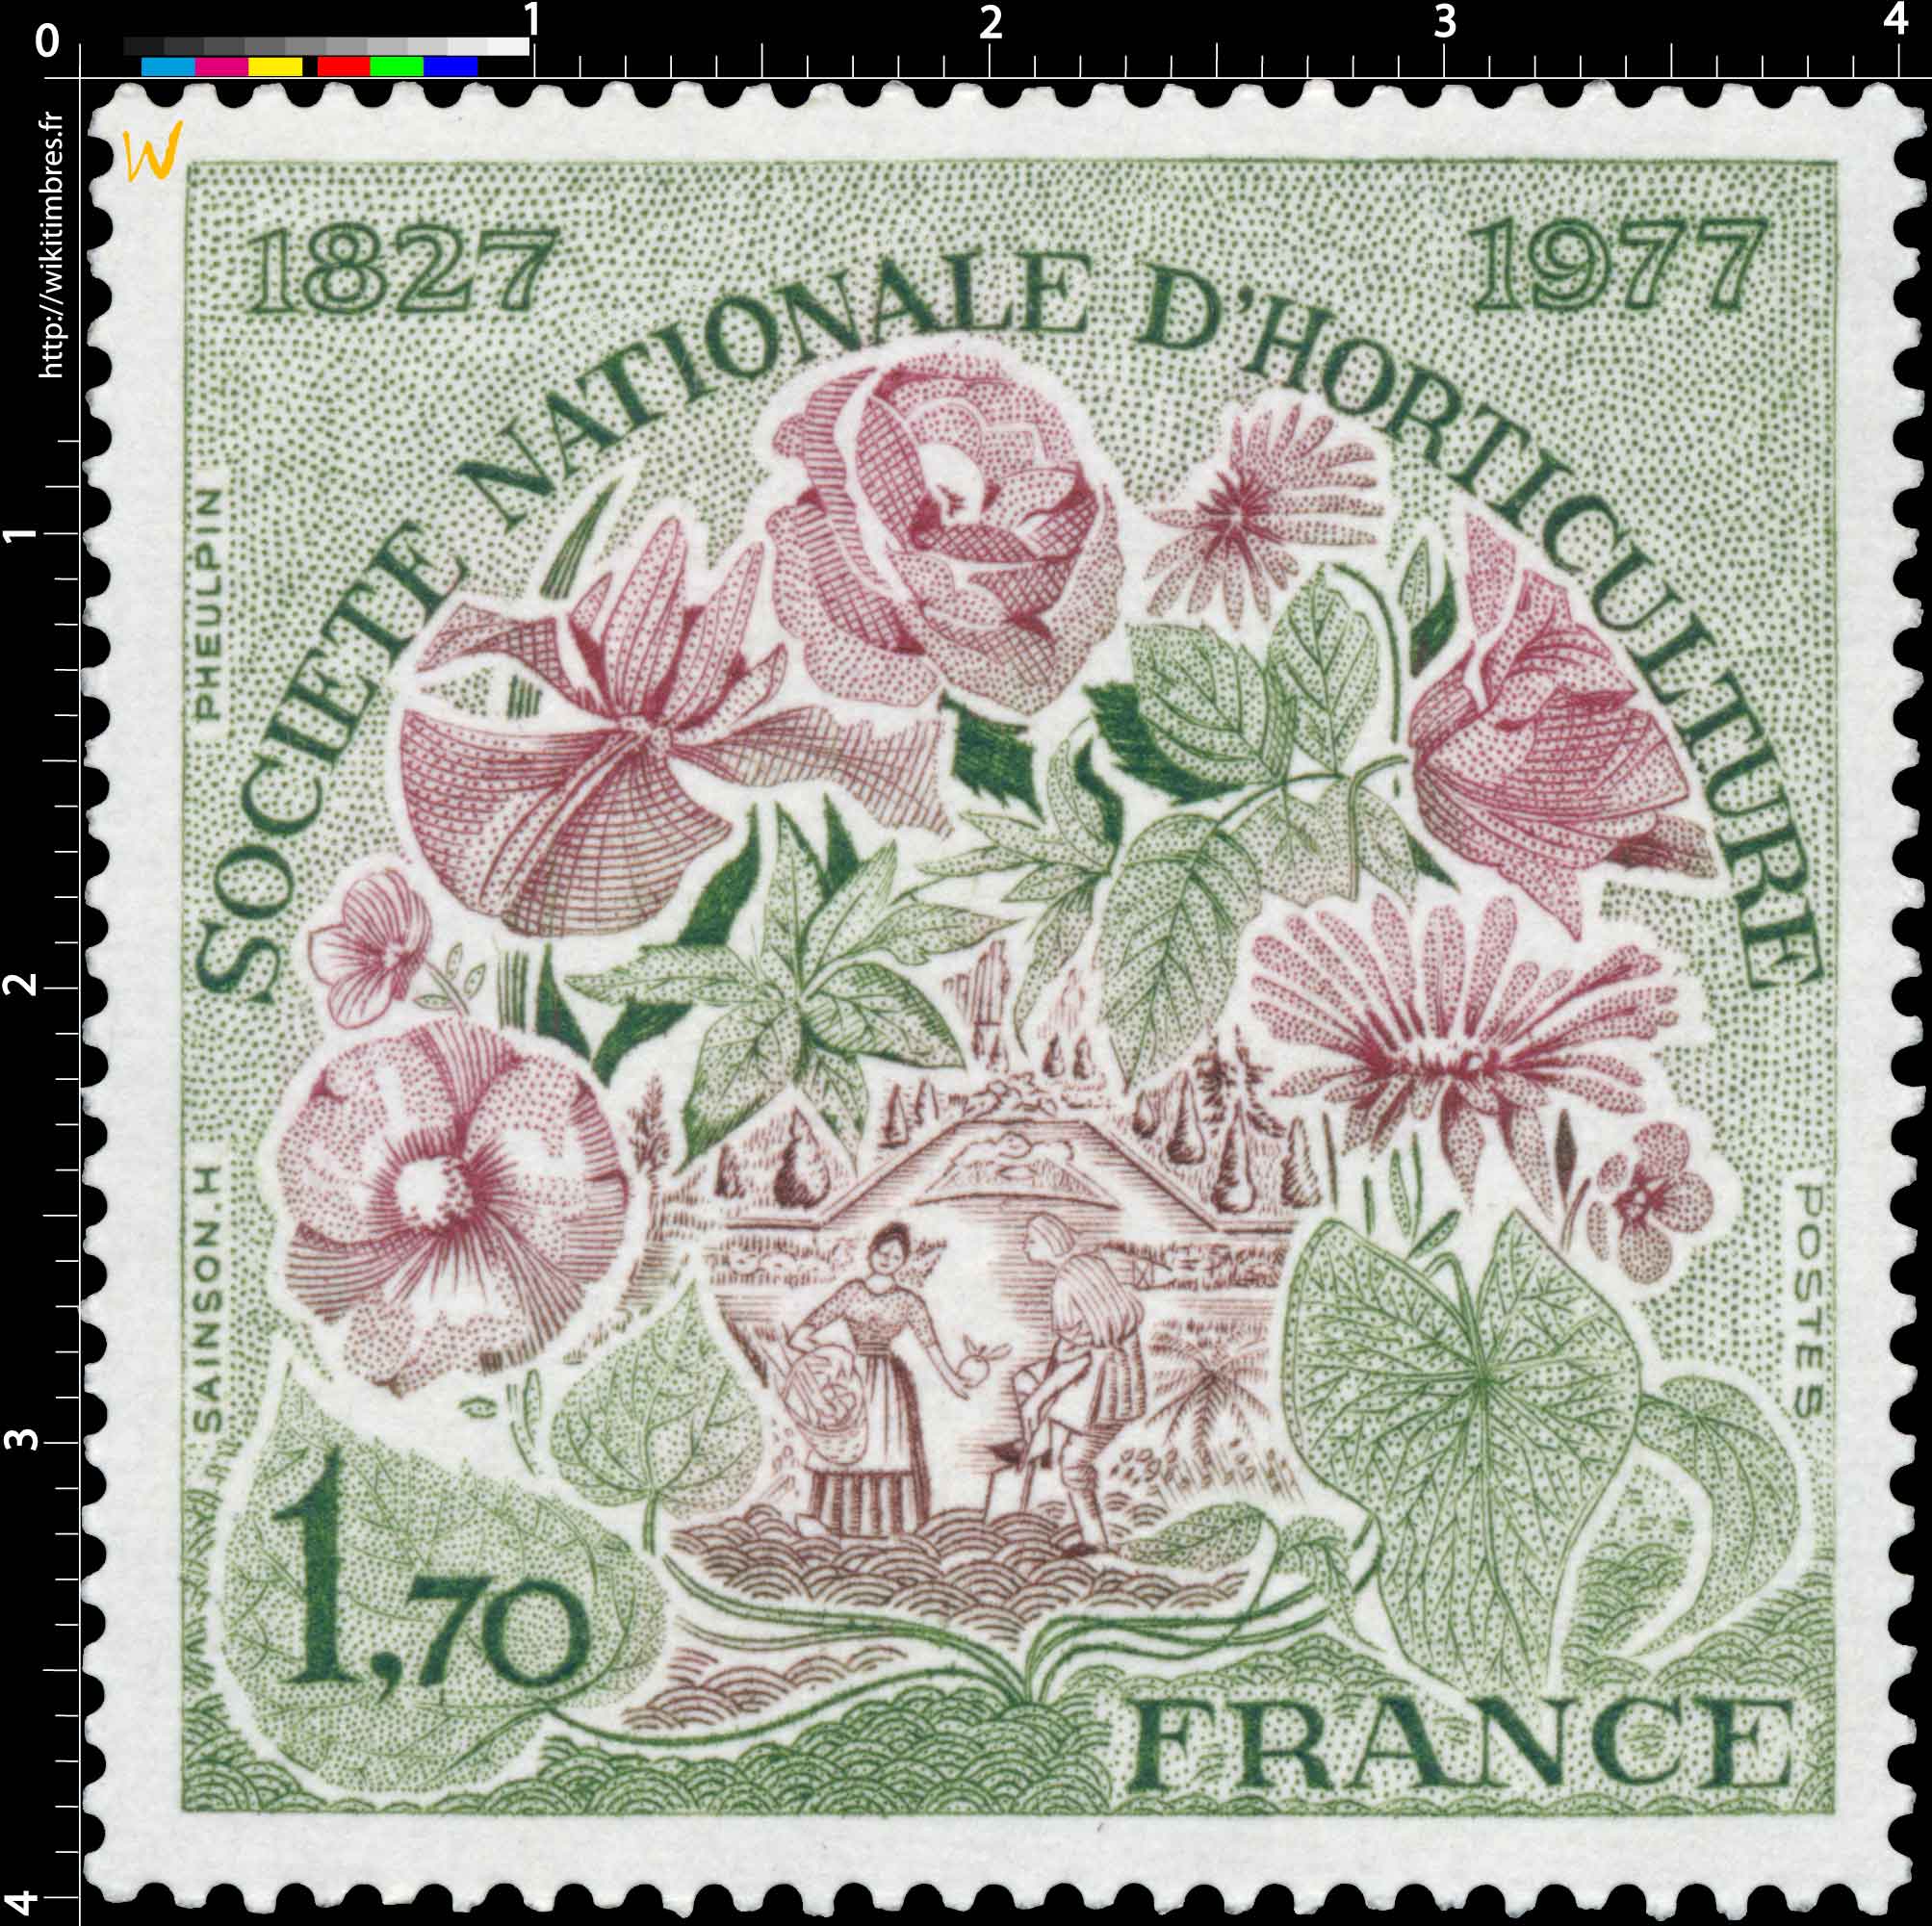 SOCIÉTÉ NATIONALE D'HORTICULTURE 1827-1977